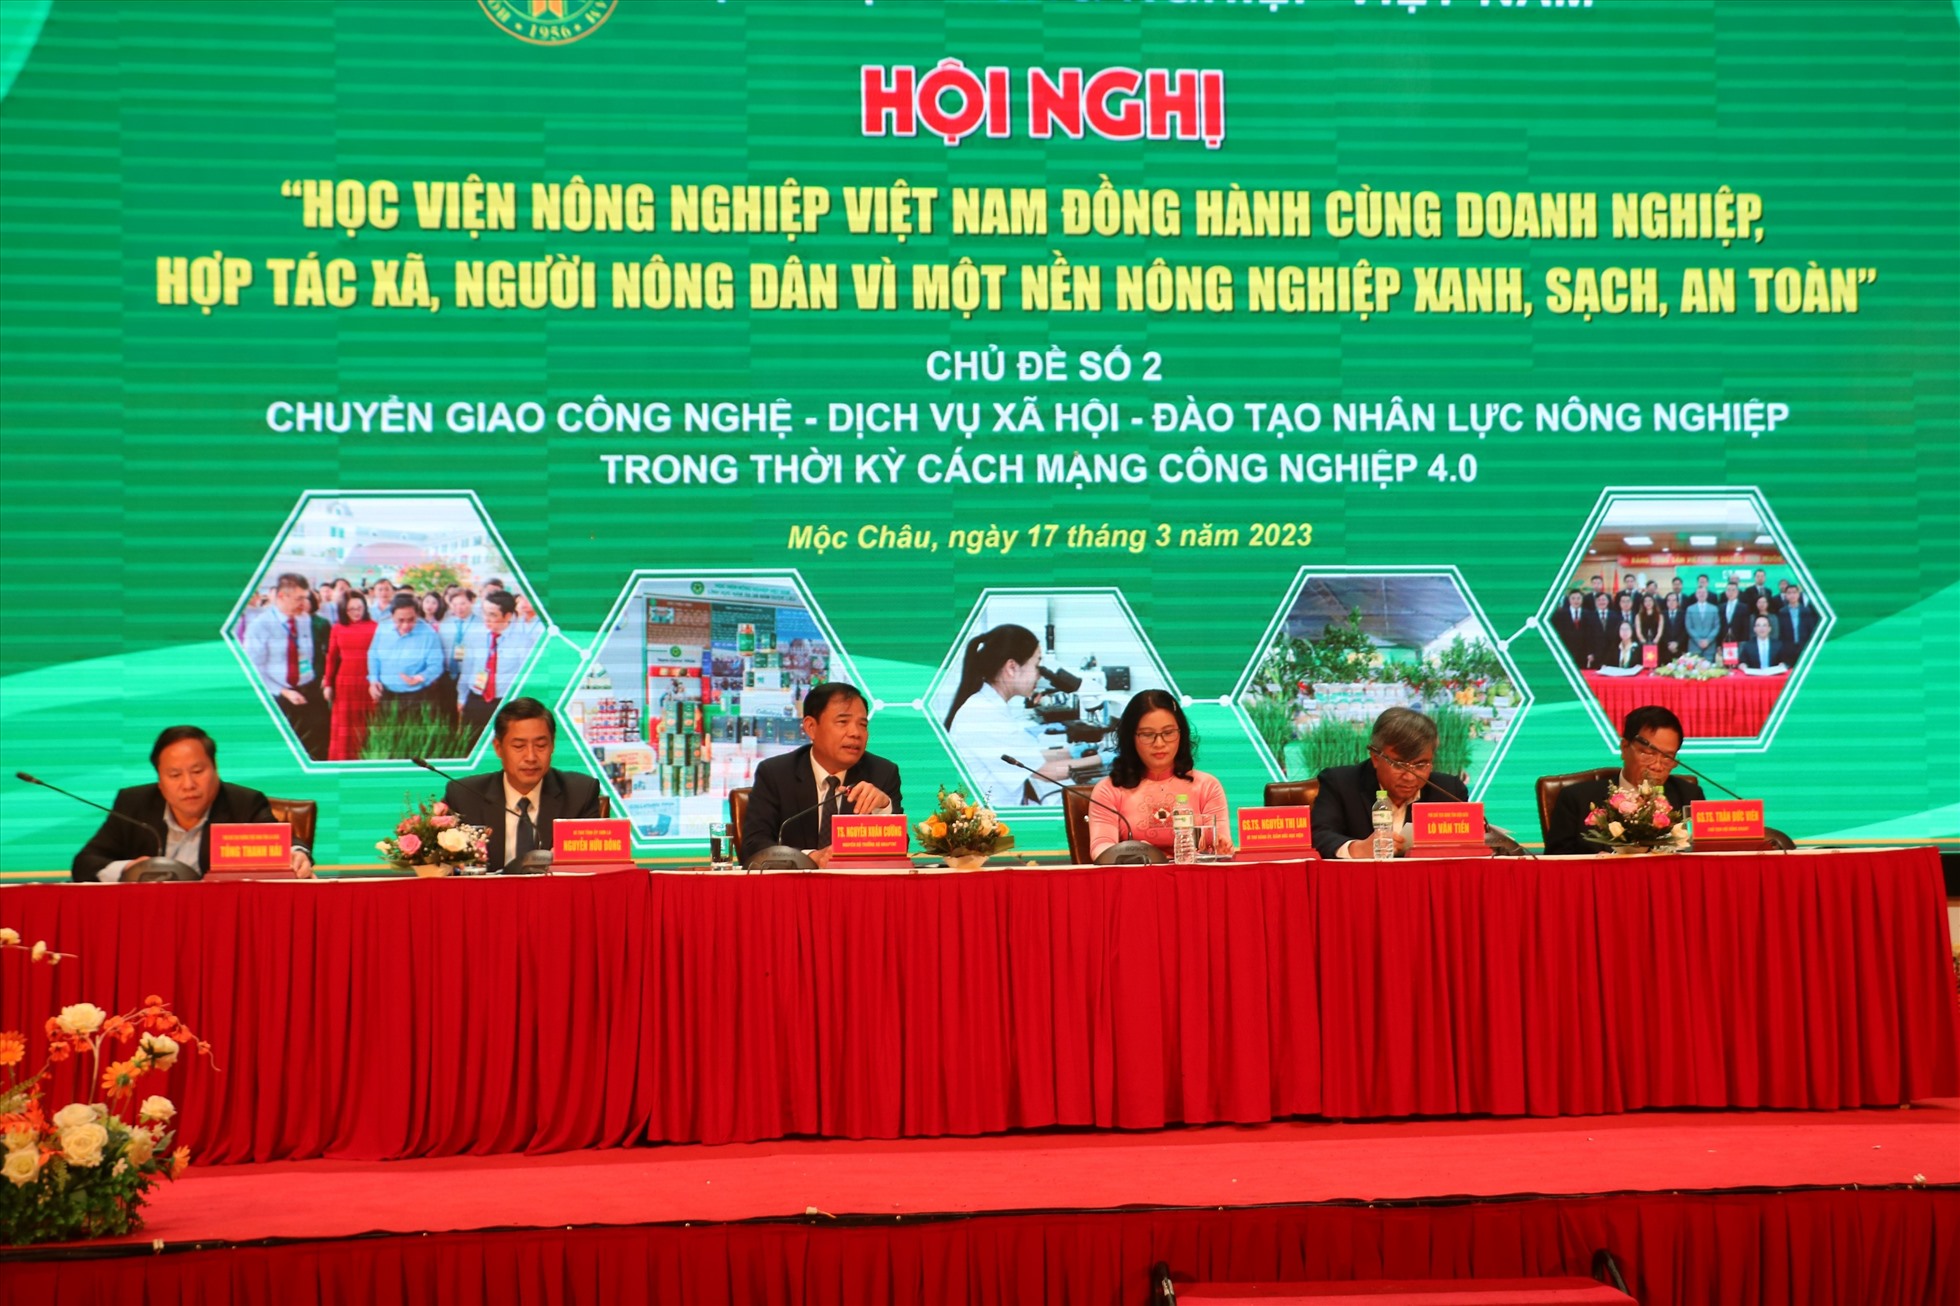 Lãnh đạo Học viện Nông nghiệp Việt Nam cùng lãnh đạo tỉnh Sơn La, lãnh đạo tỉnh Lai Châu trực tiếp lắng nghe, giải đáp các thắc mắc của nông dân tại Hội nghị. Ảnh: Dương Triều